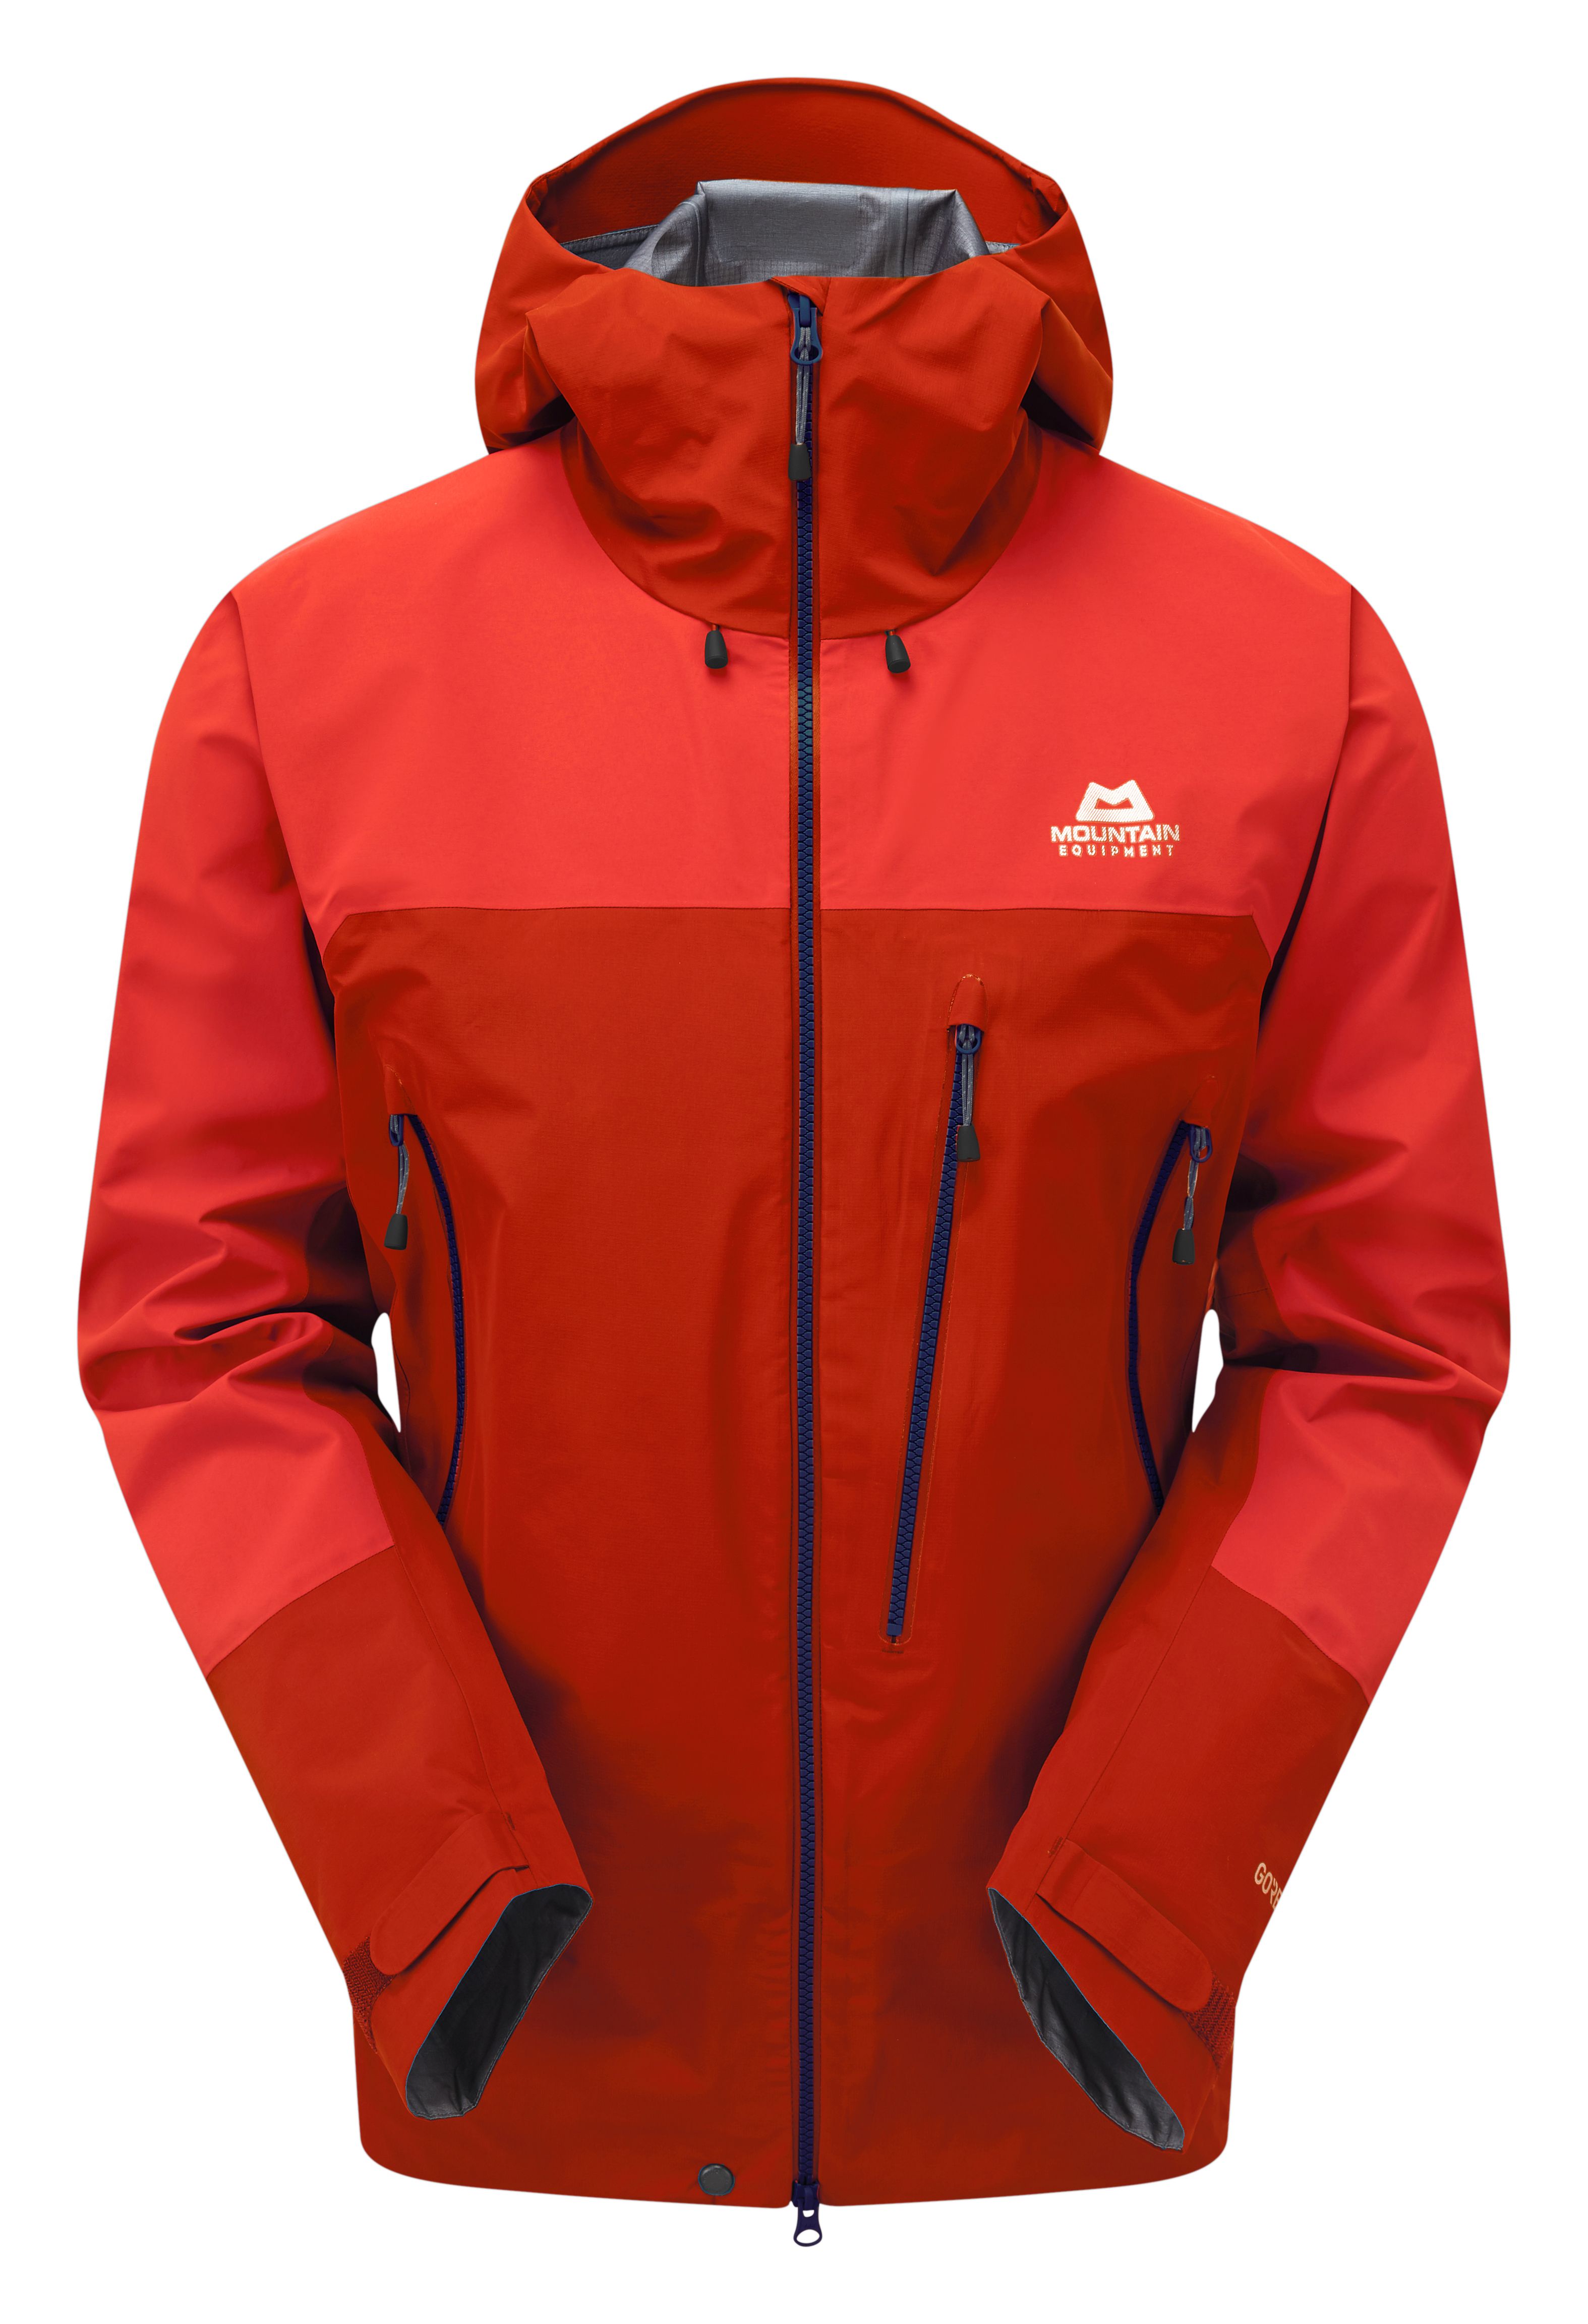 Mountain Equipment Lhotse Jacket - Hardshell jacket - Men's